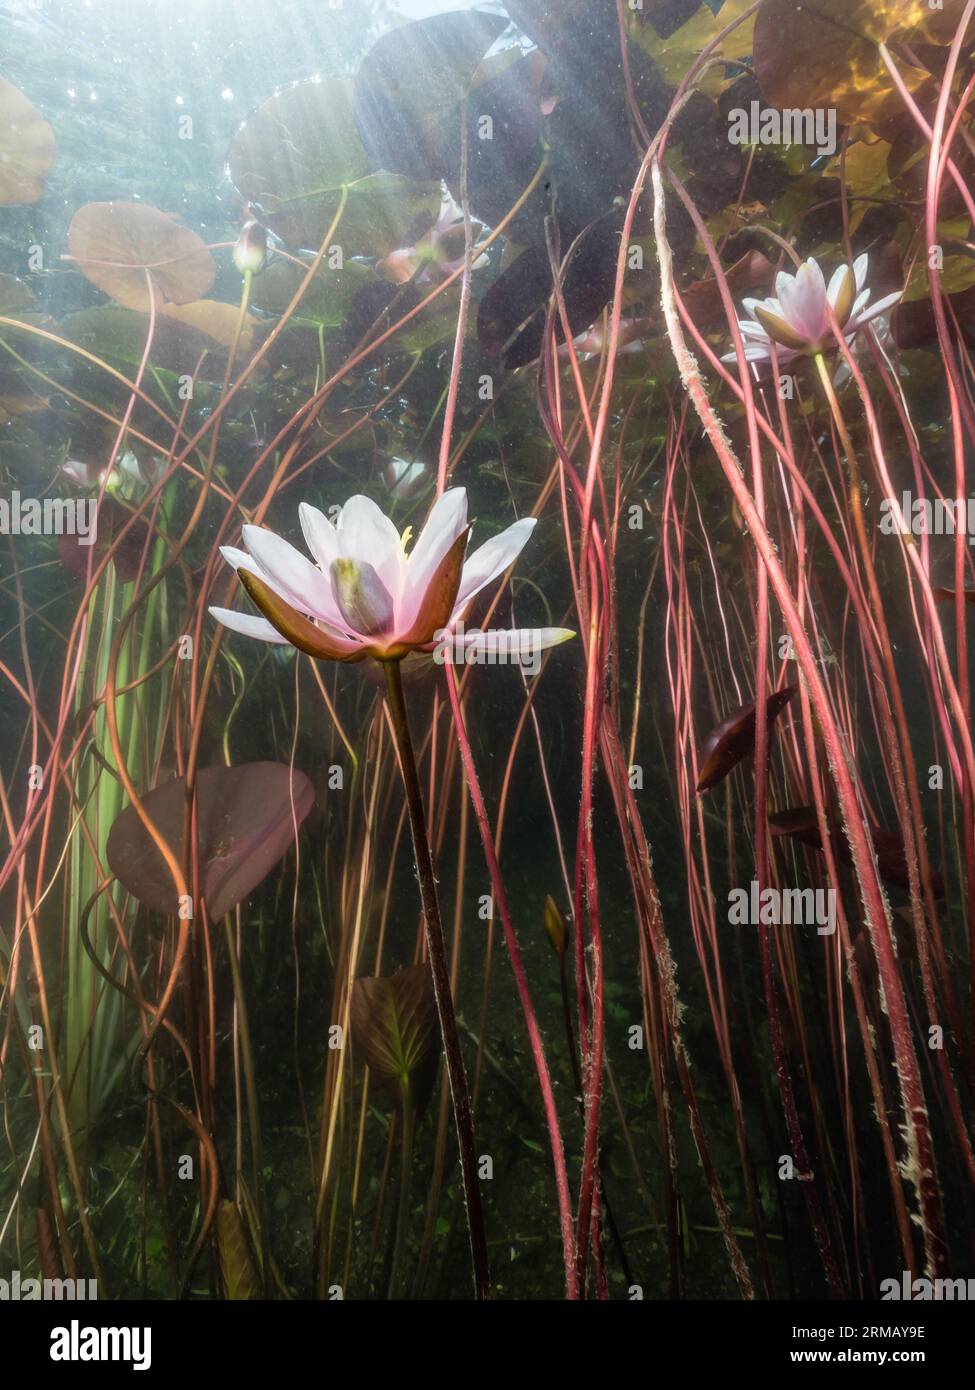 Seerosen (Nymphaea) ,Sonnenstrahlen, Lichtspiele, water lily,Seerosenblüte,NRW,Germany Stock Photo